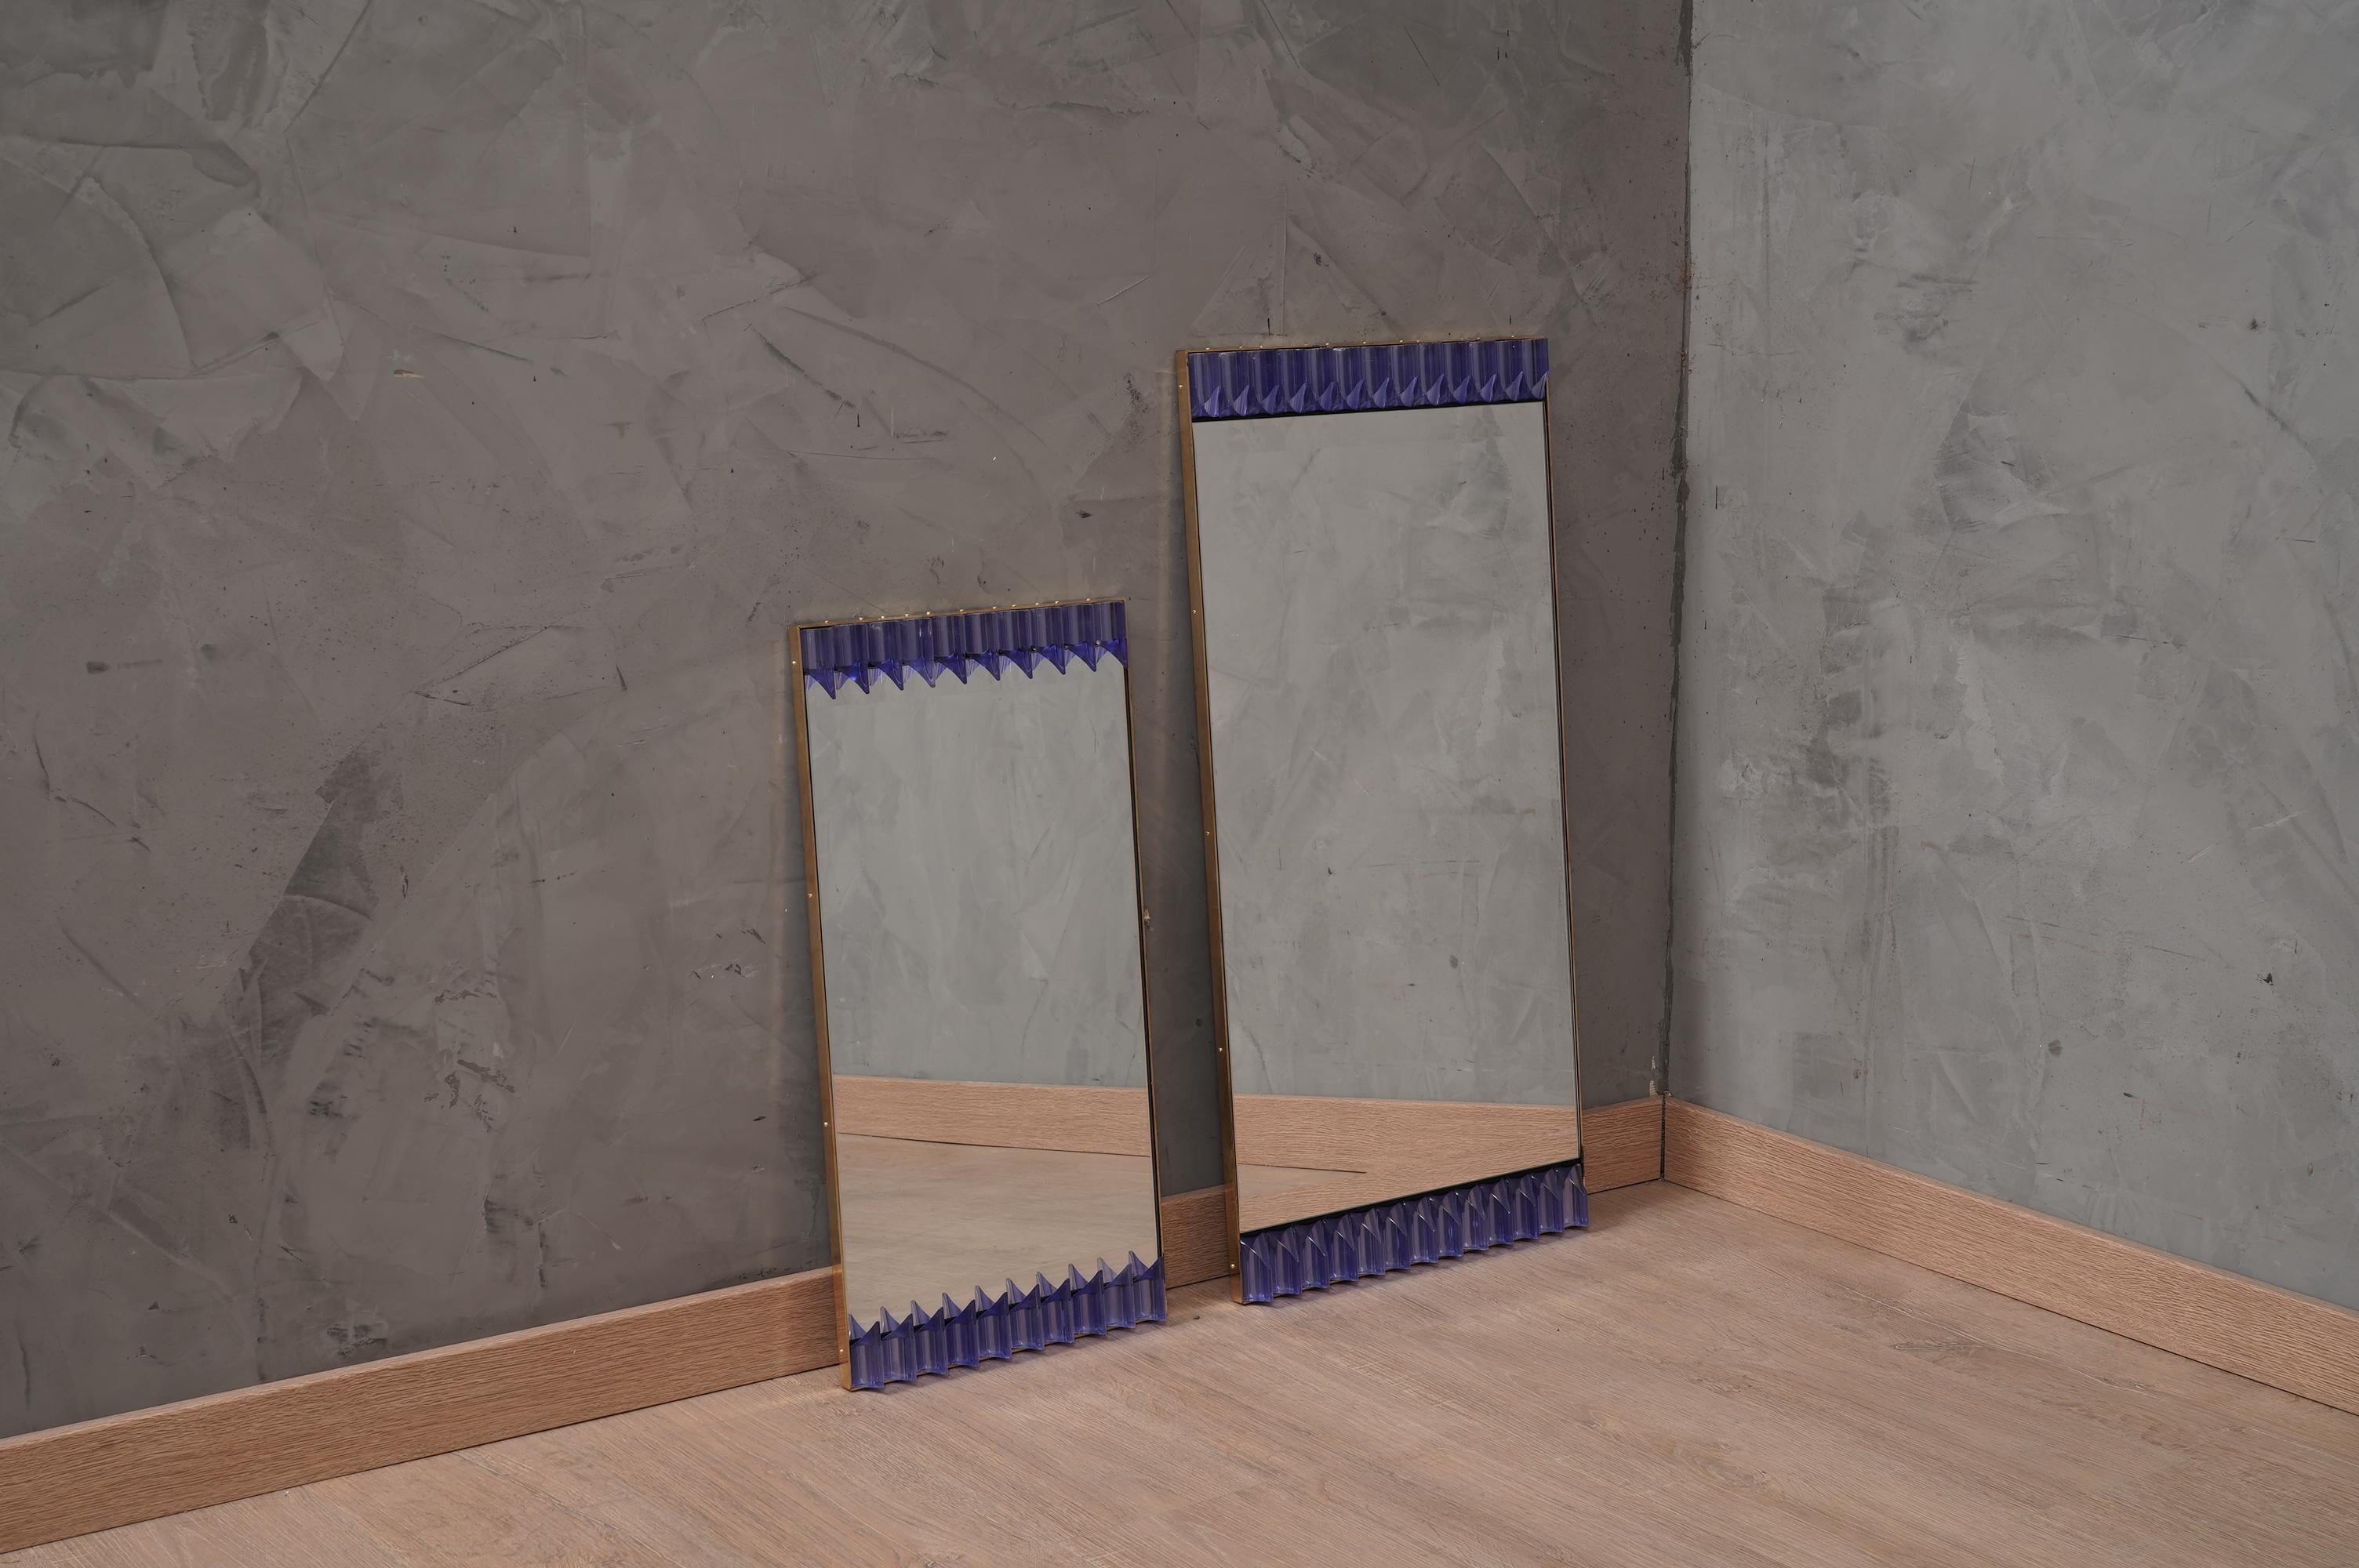 Ein starker periwinkle Rahmen, erreichen das Auge des Betrachters, so dass er verzaubert; von Murano periwinkle Kunstglas Wandspiegel. Formschön und von hervorragender Größe, ist der Wandspiegel ein echtes Designobjekt.

Die Struktur des